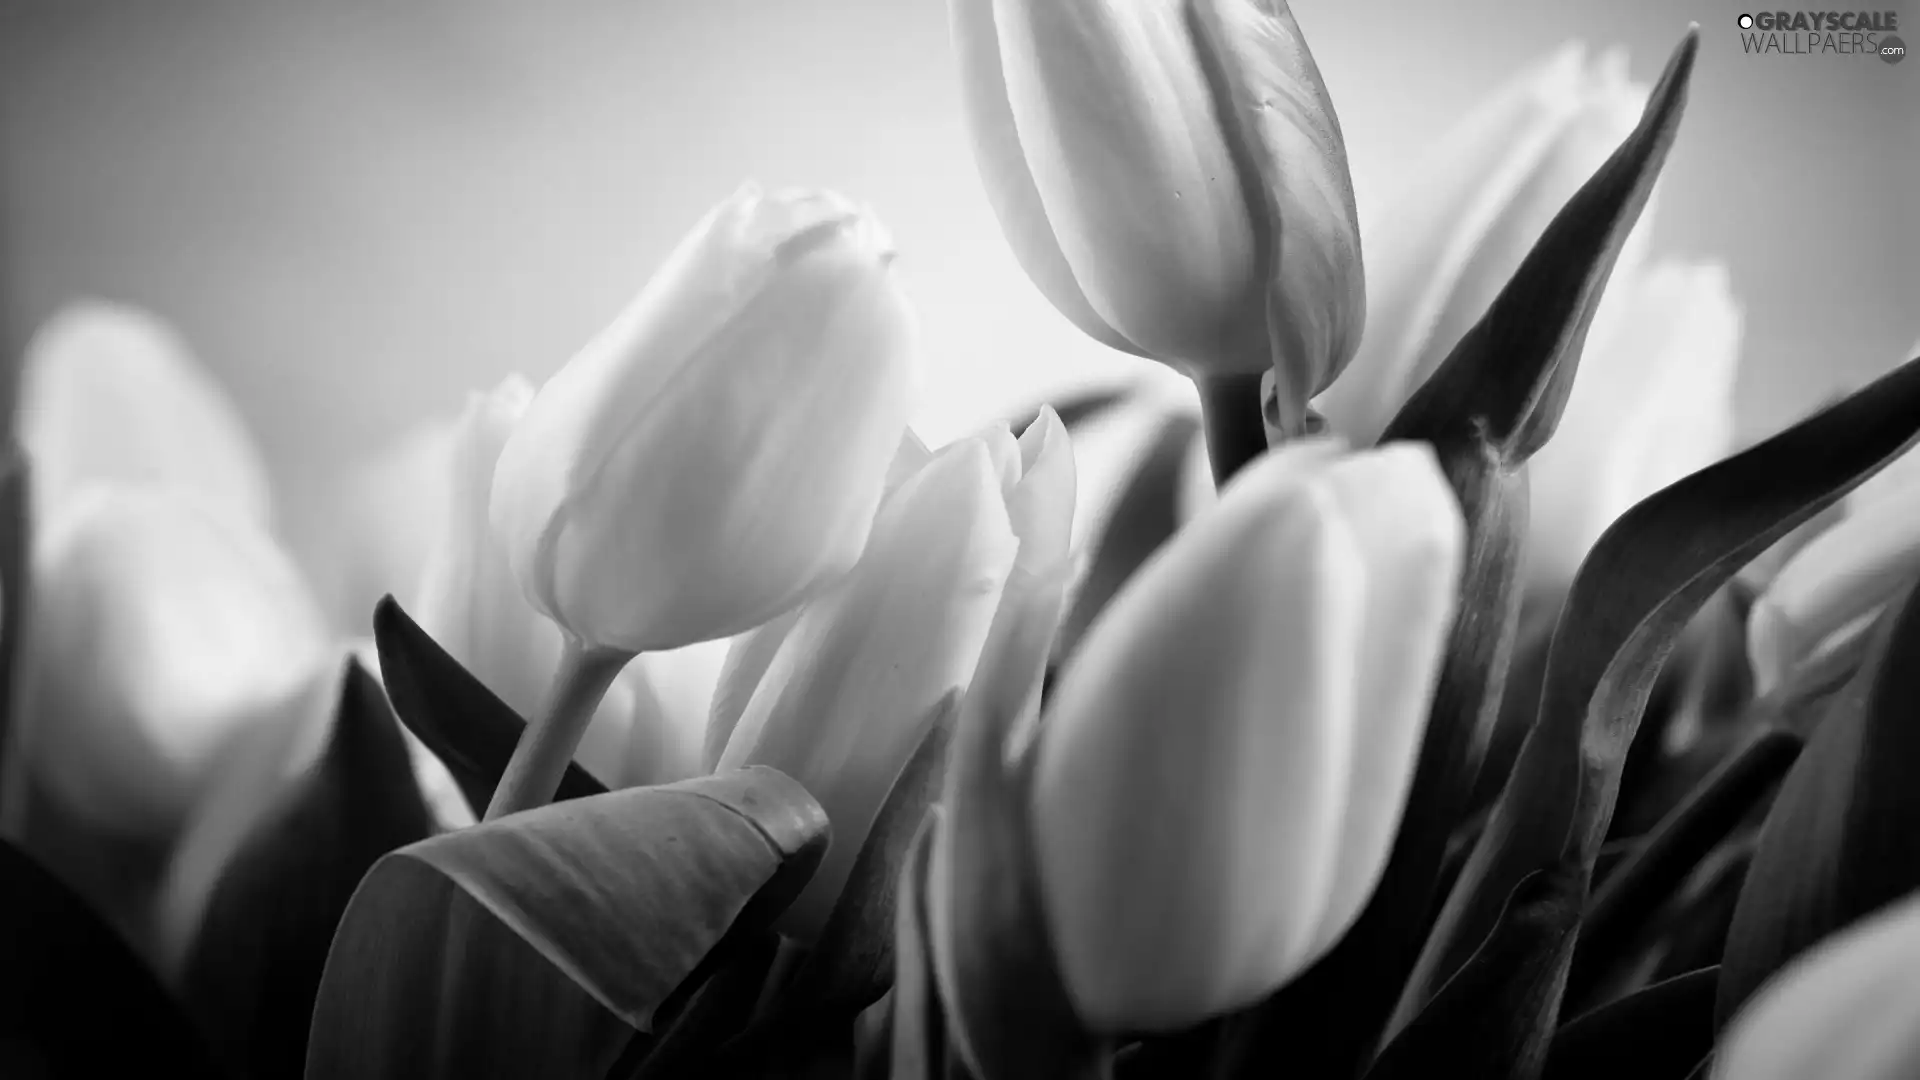 Tulips, White, Yellow